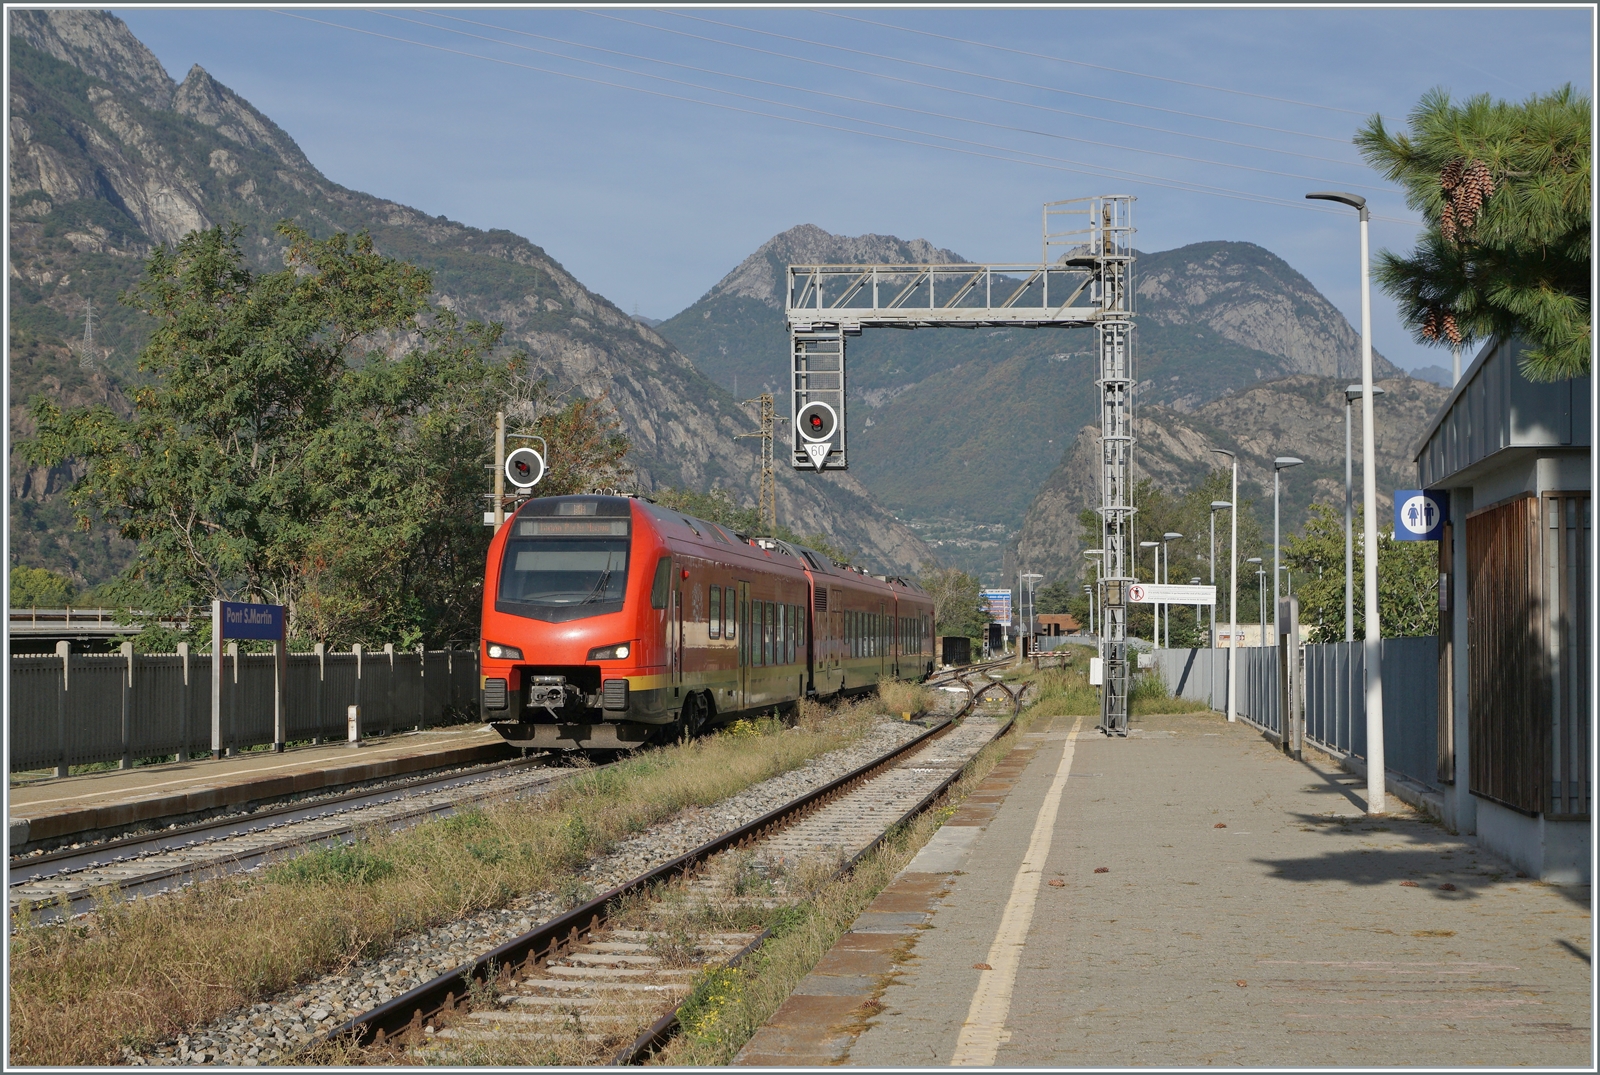 Der FS Trenitalia BTR 813 001 erreciht den Bahnhof von Pont S. Martin. Dies ist der lezte Halt im Aosta Tal, der nächste Halt wird Ivrea sein, von dort an ist die Strecke elektrifiziert. 

12. Okt. 2023